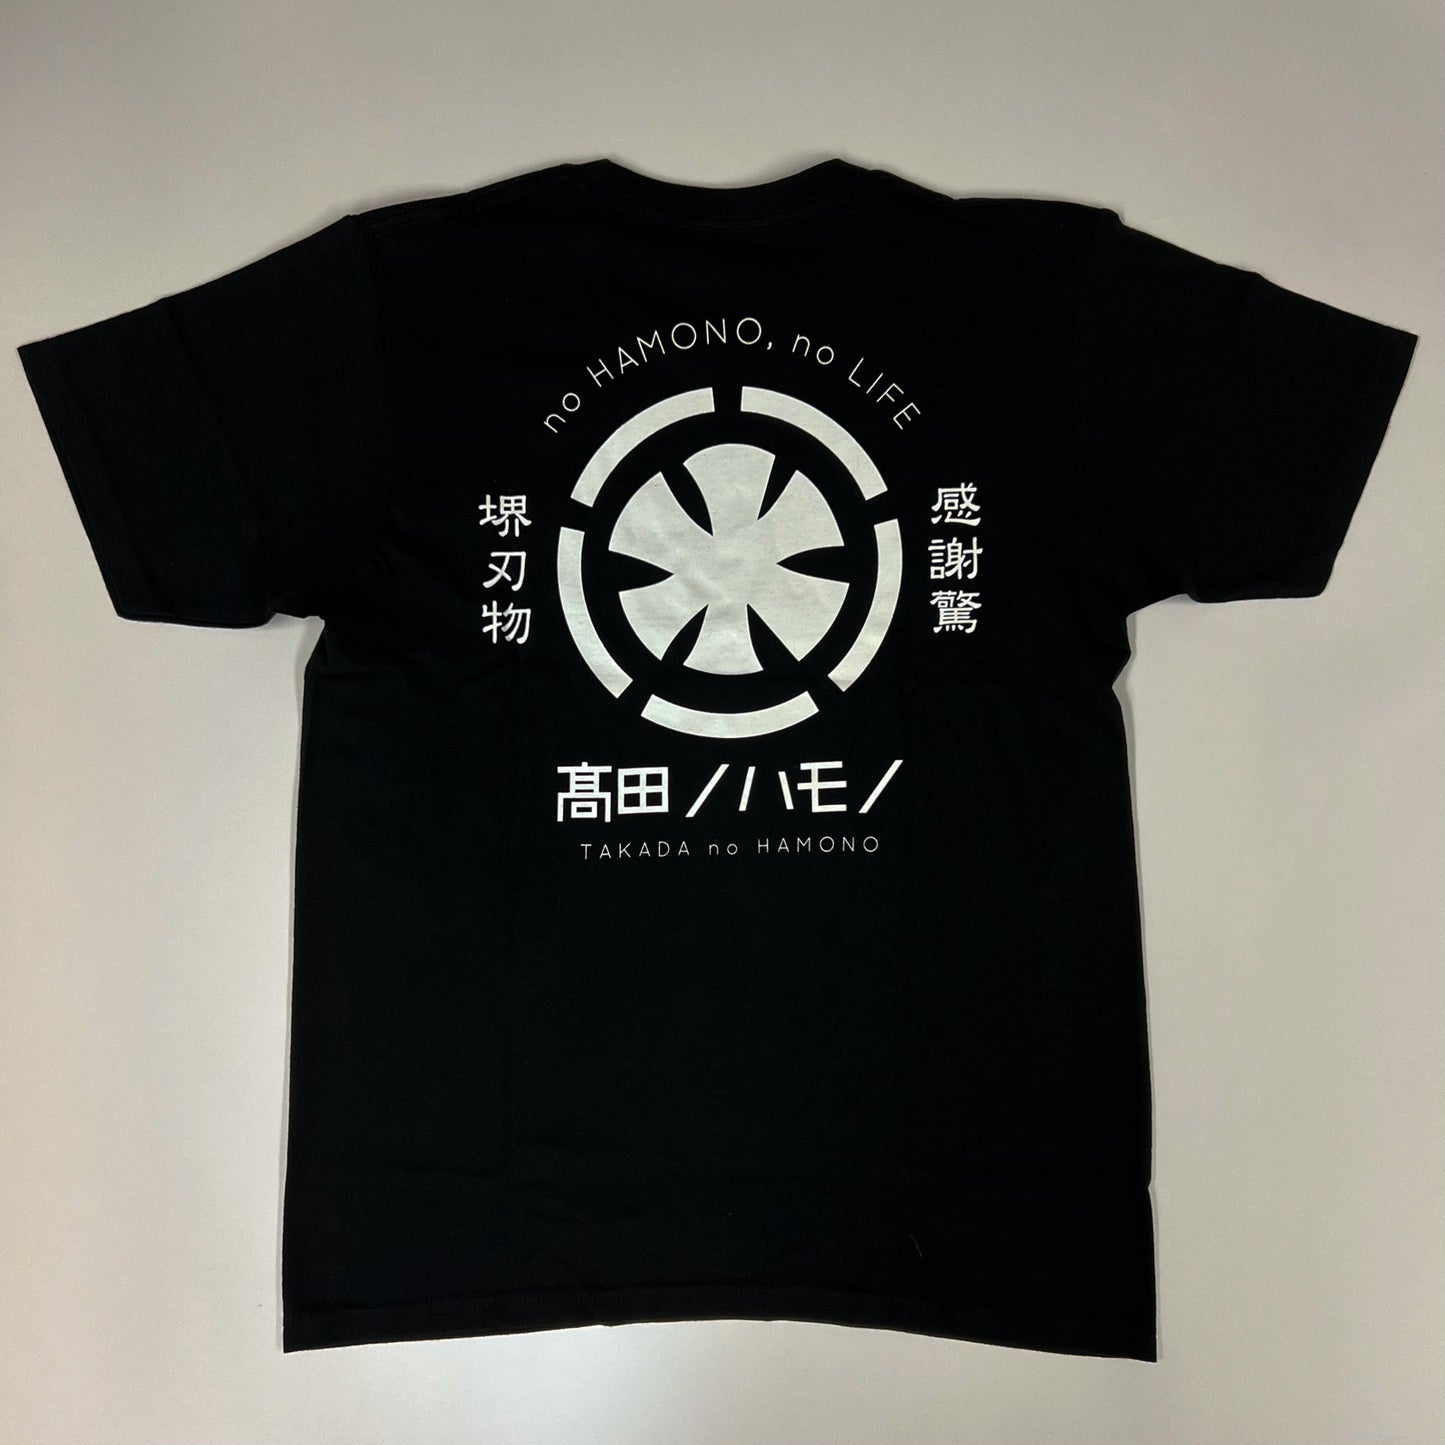 Takada no Hamono Black T-shirts